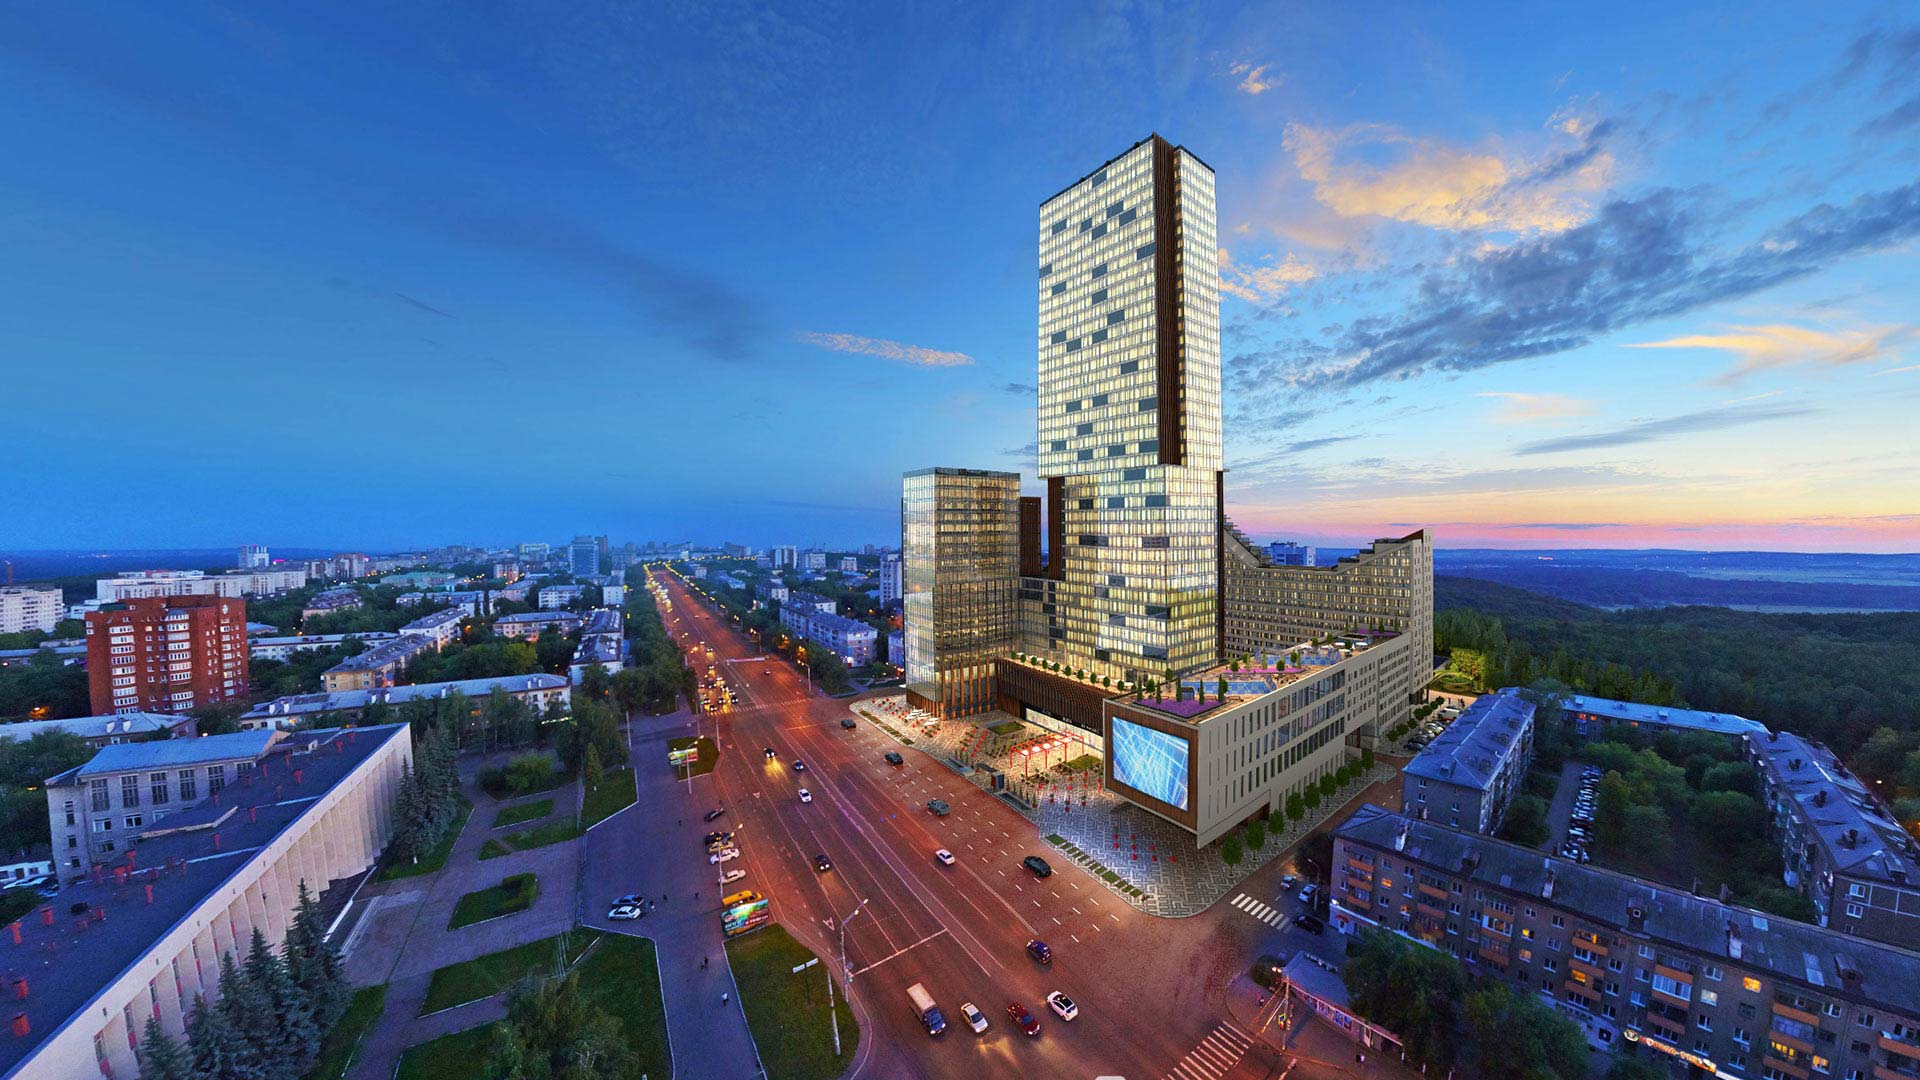 Bedømmelse af de bedste billige hoteller i Ufa i 2022